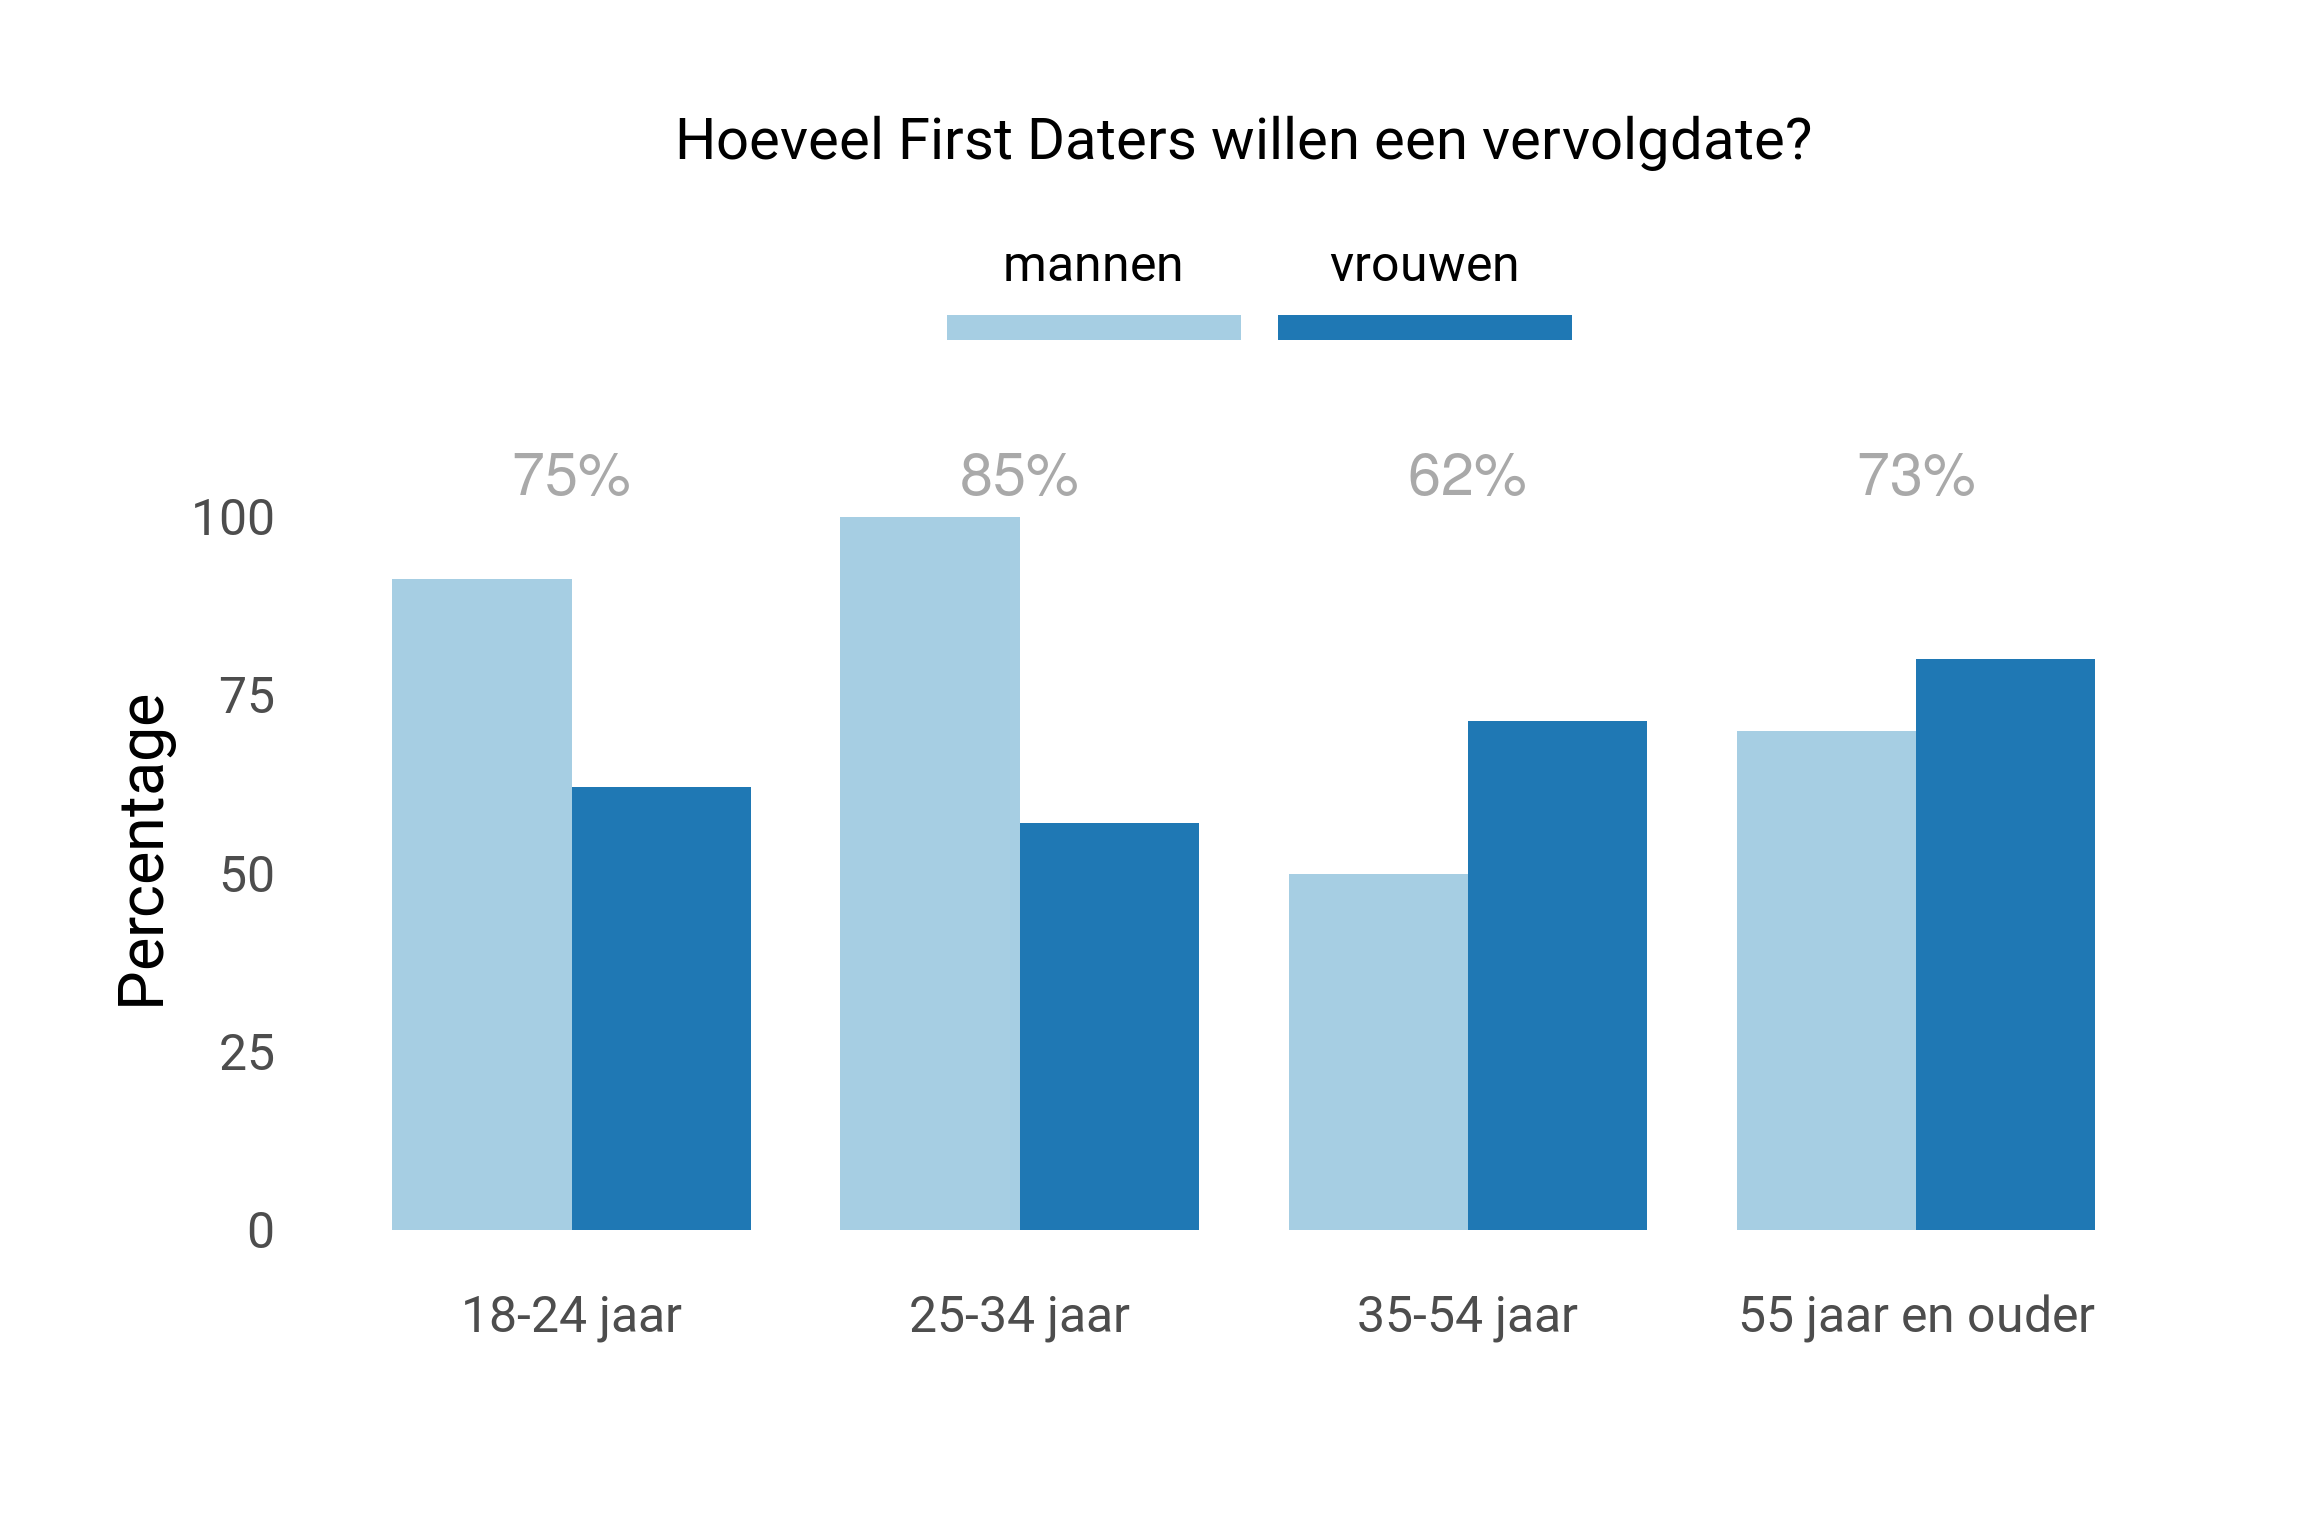 Hoeveel % van de deelnemers wil een tweede date, naar leeftijd en geslacht